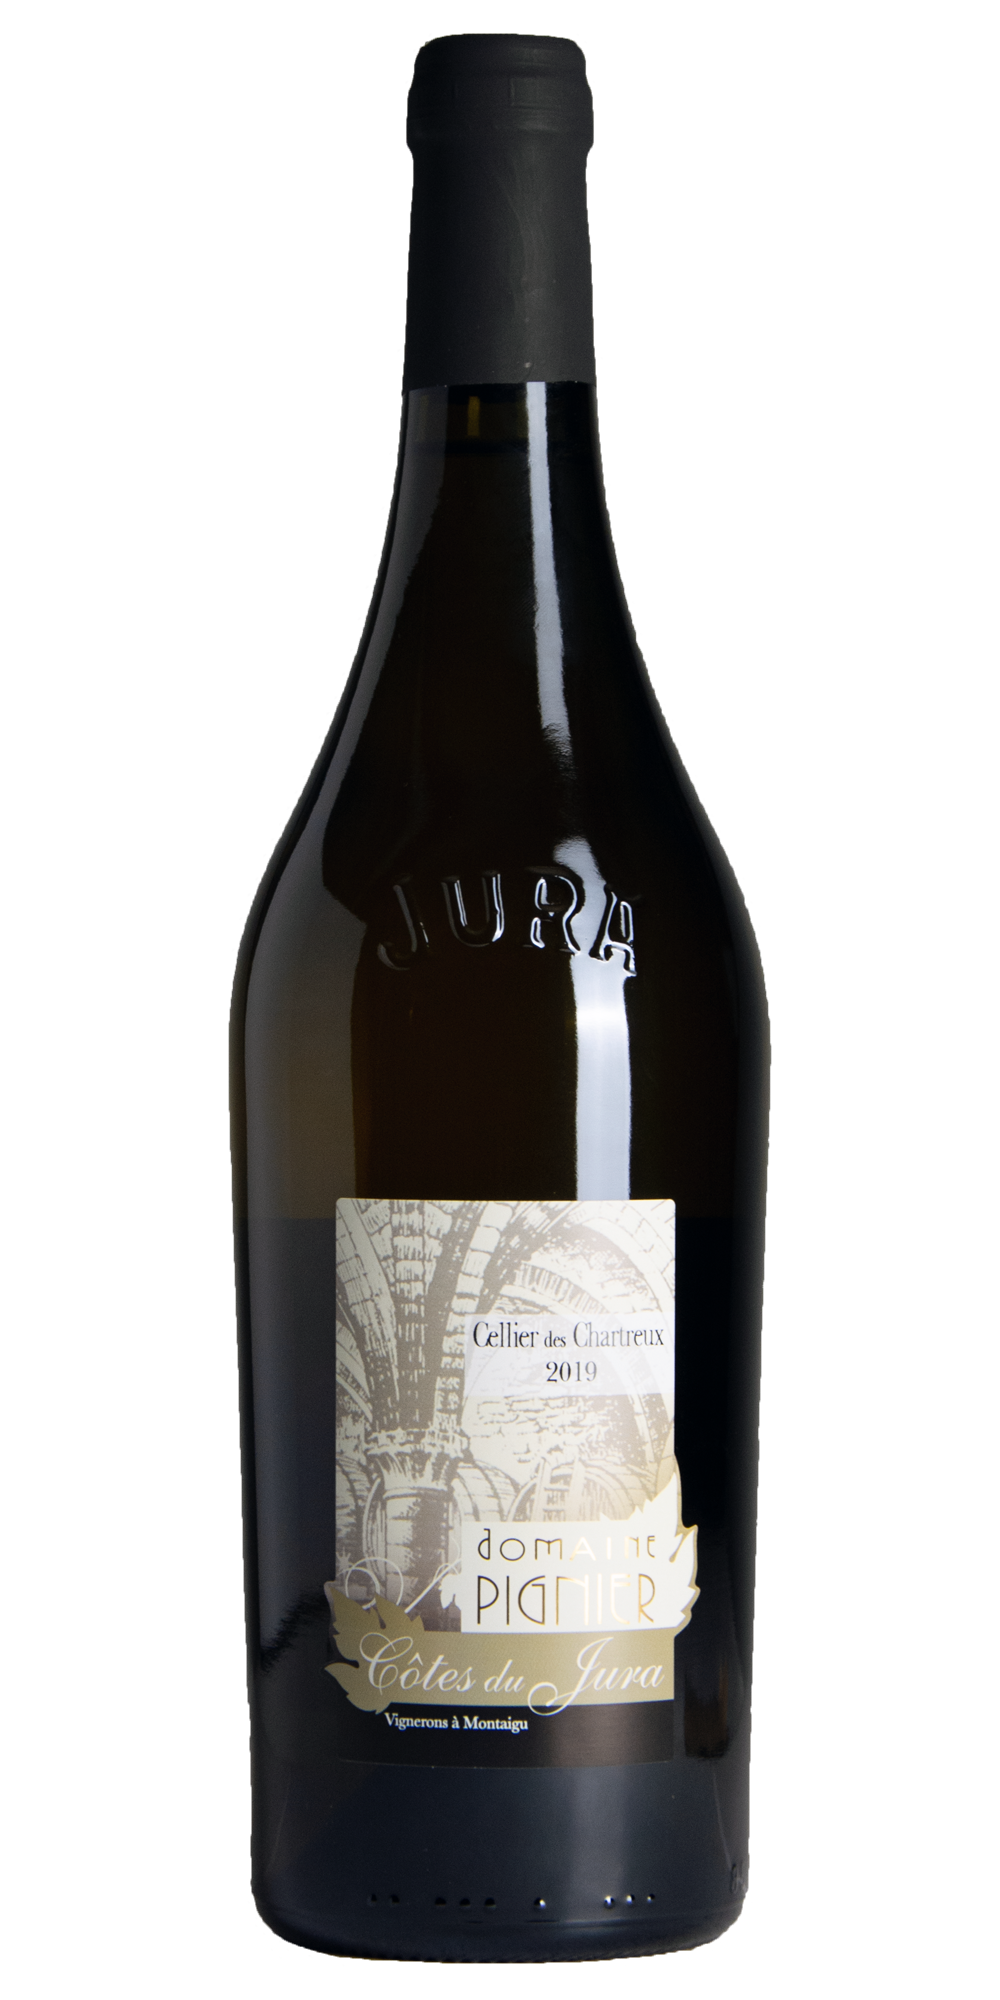 2019 Chardonnay non ouillé Cellier des Chartreux